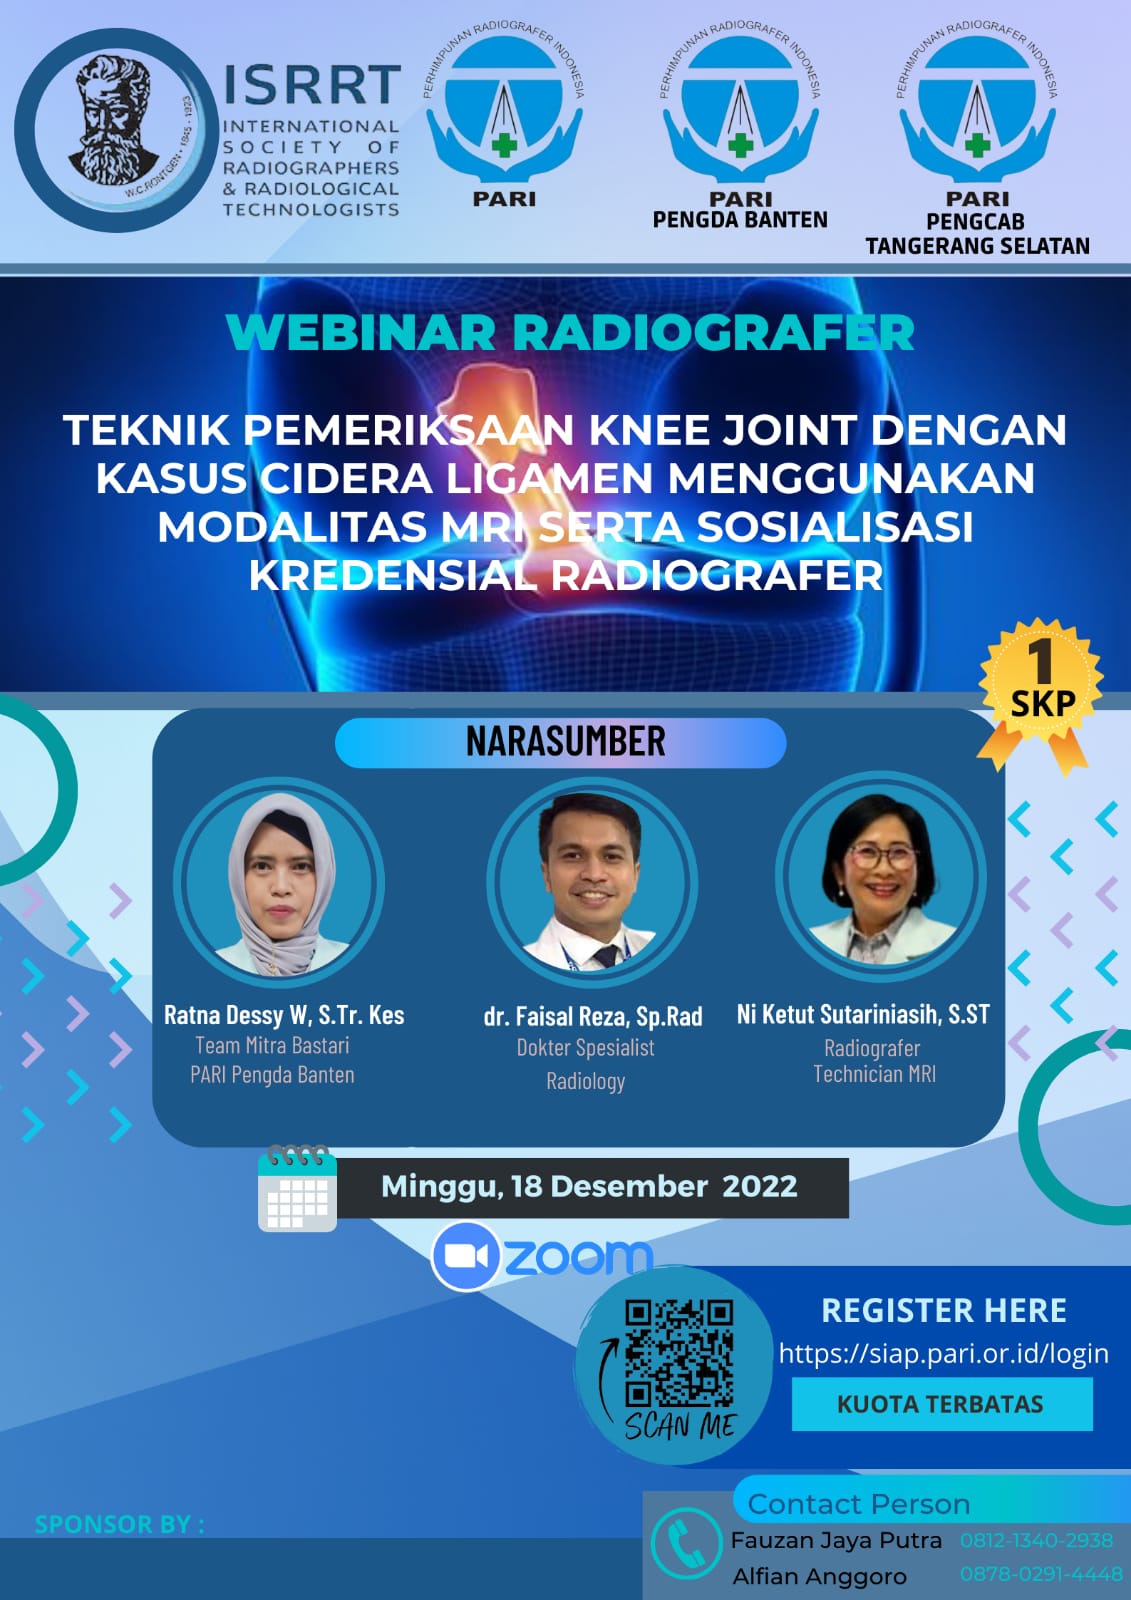 Webinar Pengcab Tangerang Selatan : Teknik Pemeriksaan Knee Joint dengan Kasus Cidera Ligamen menggunakan Modalitas MRI serta Sosialisasi Kredensial Radiografer